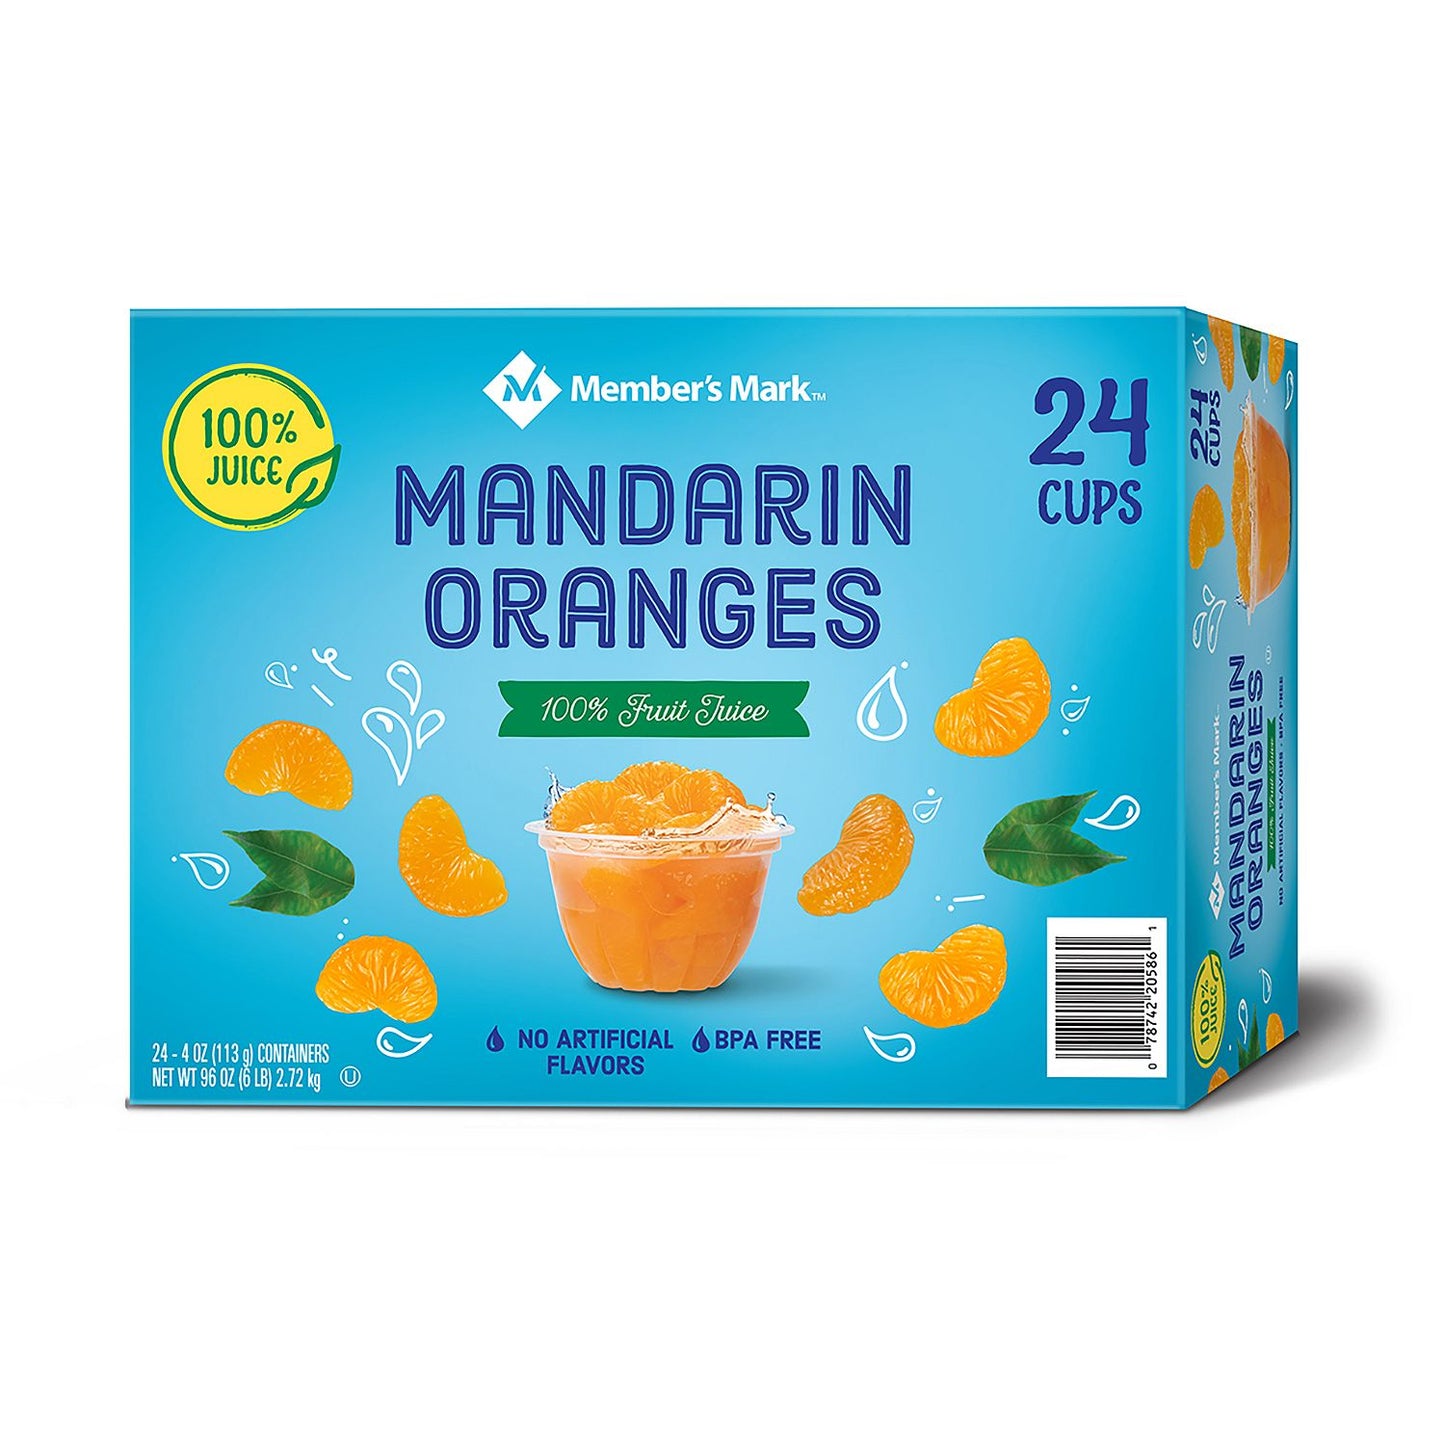 Member's Mark Mandarin Oranges (4 oz., 24 ct.)